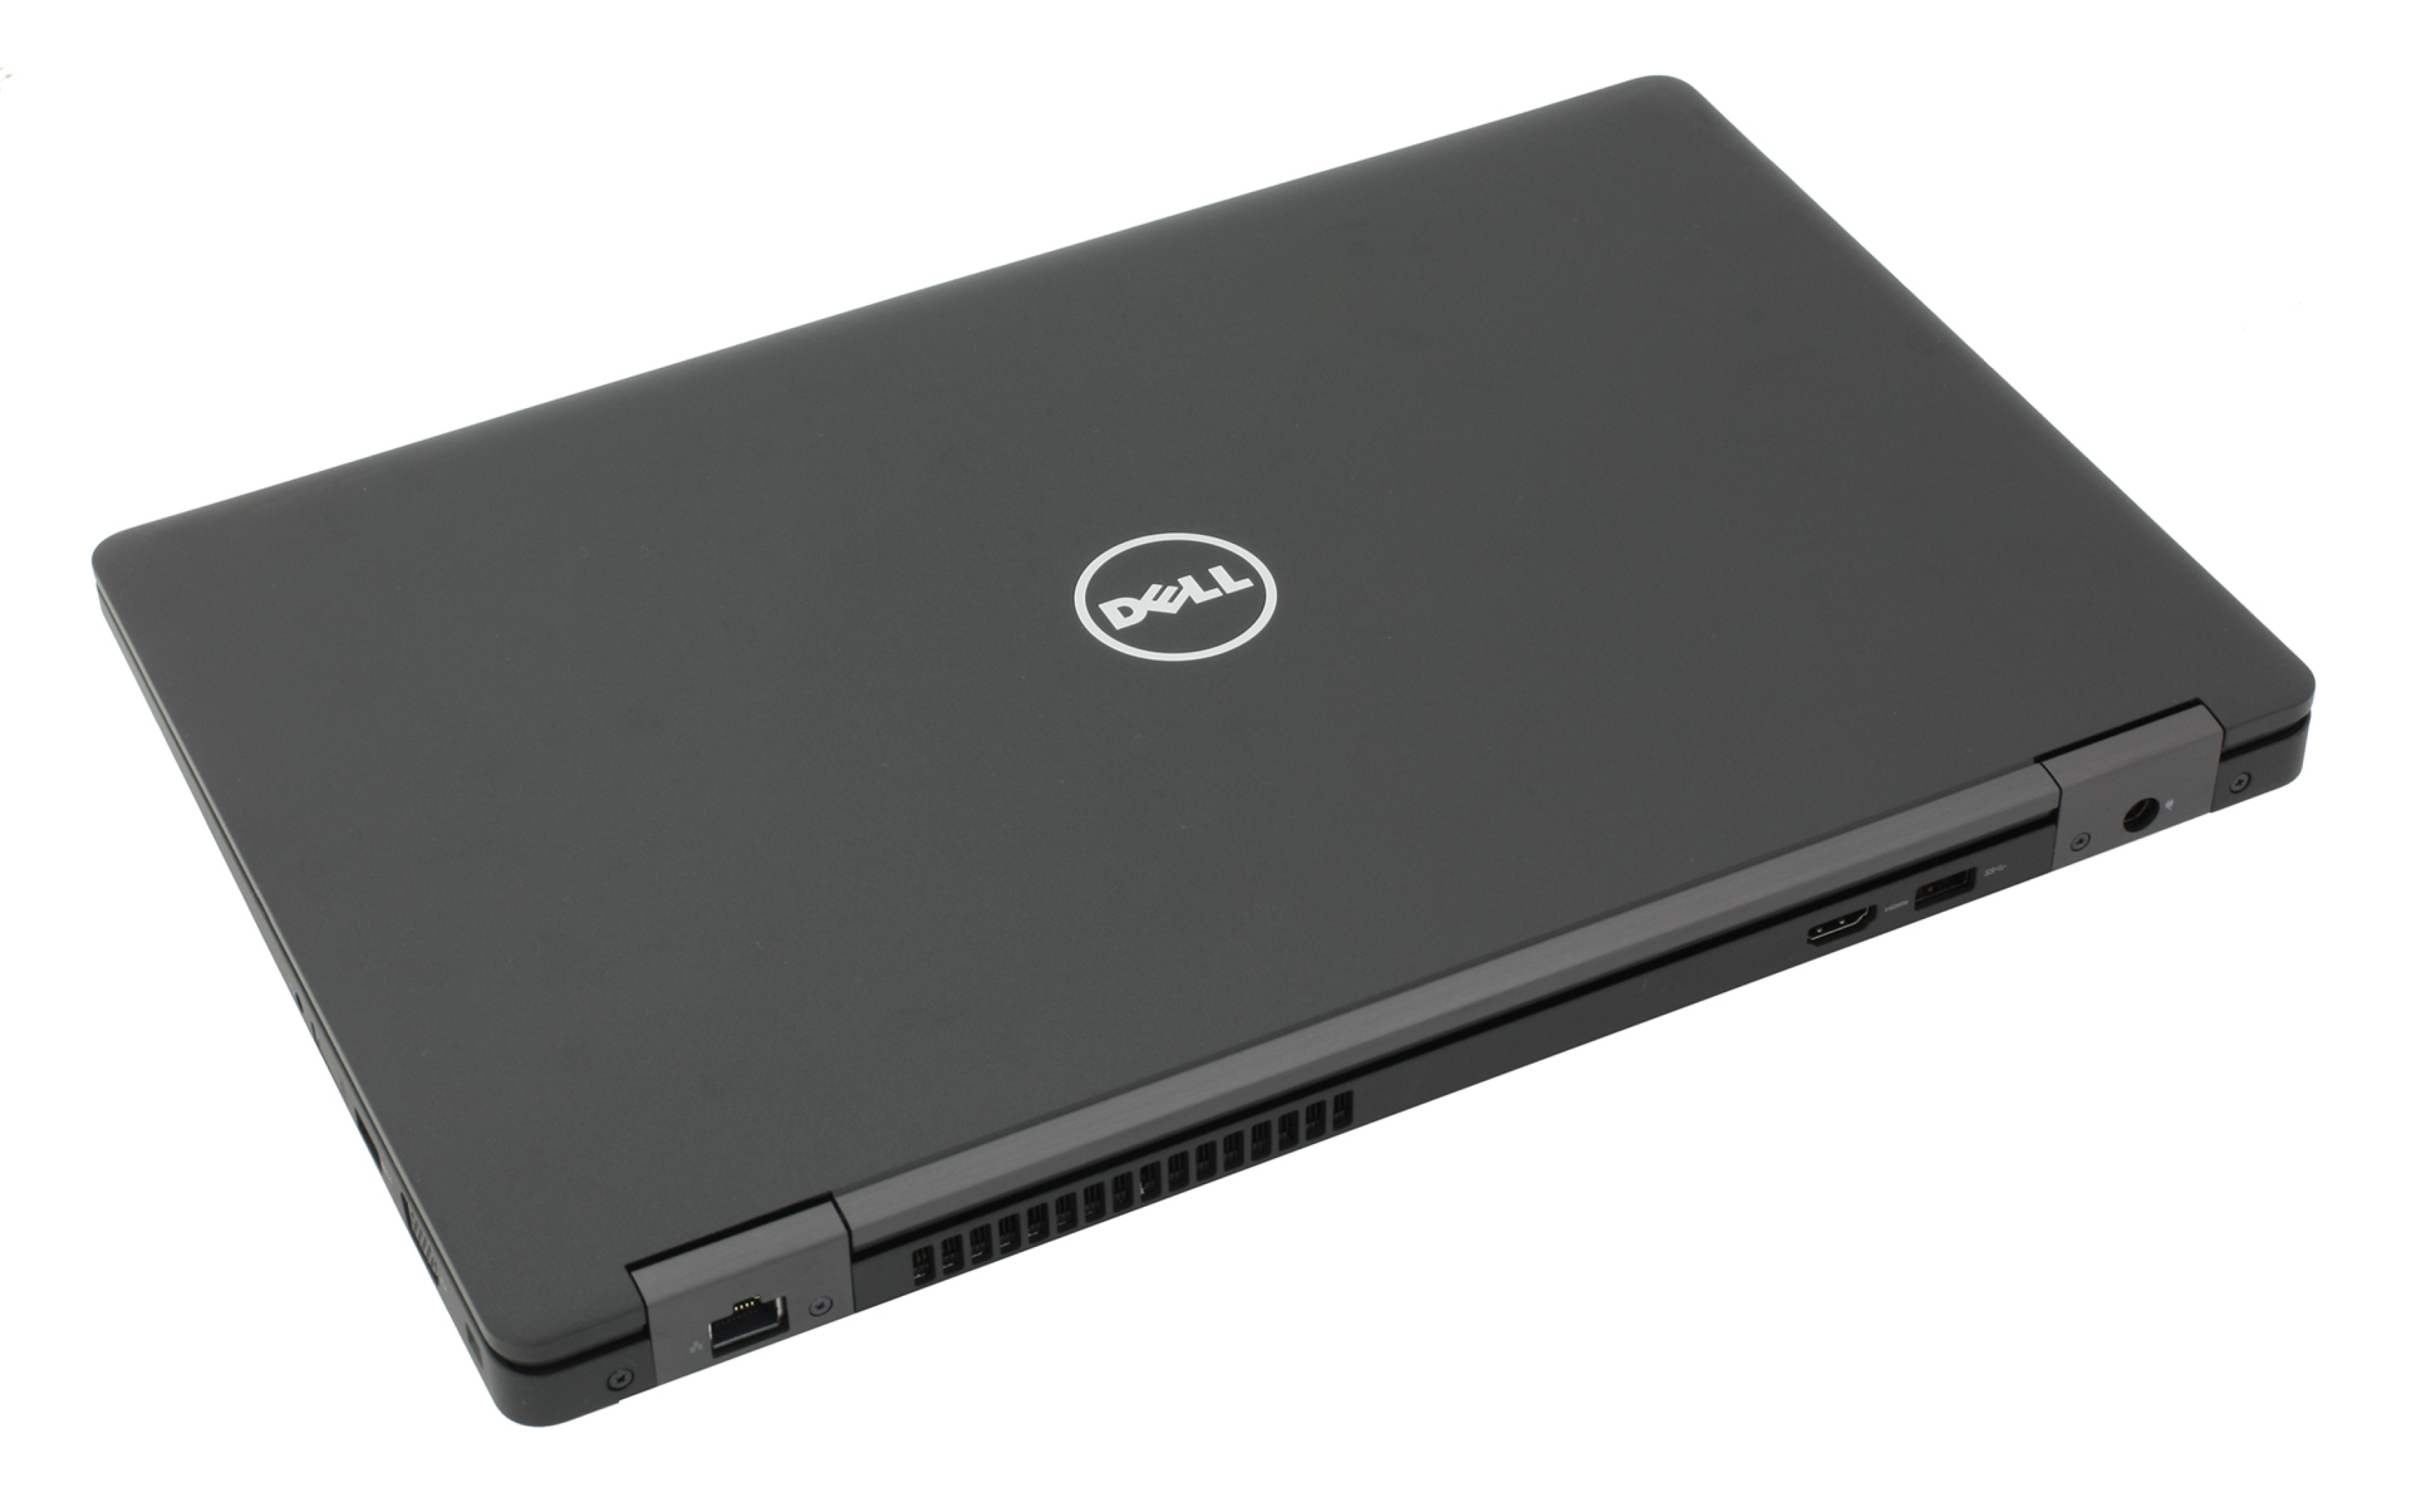  خرید لپ تاپ Dell Precision 3520 با رم 8 گیگابایت هارد 256 گیگ SSD با گرافیک دو گیگ انودیا و با پردازنده نسل ششم Core i7 